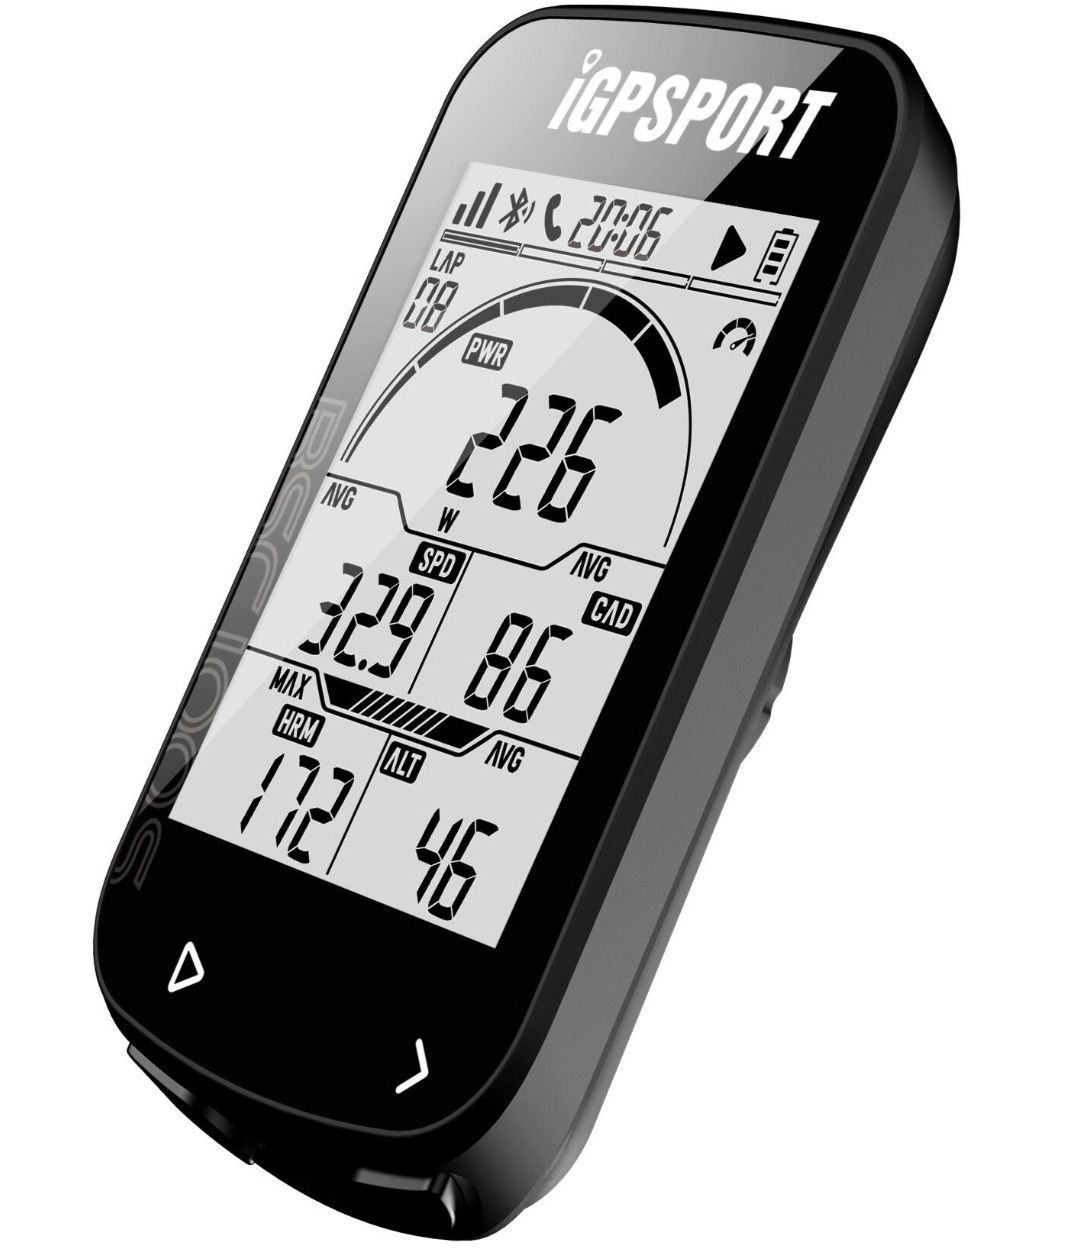 Licznik rowerowy IGPSPORT GPS BSC100S uchwyt CYCPLUS Z1